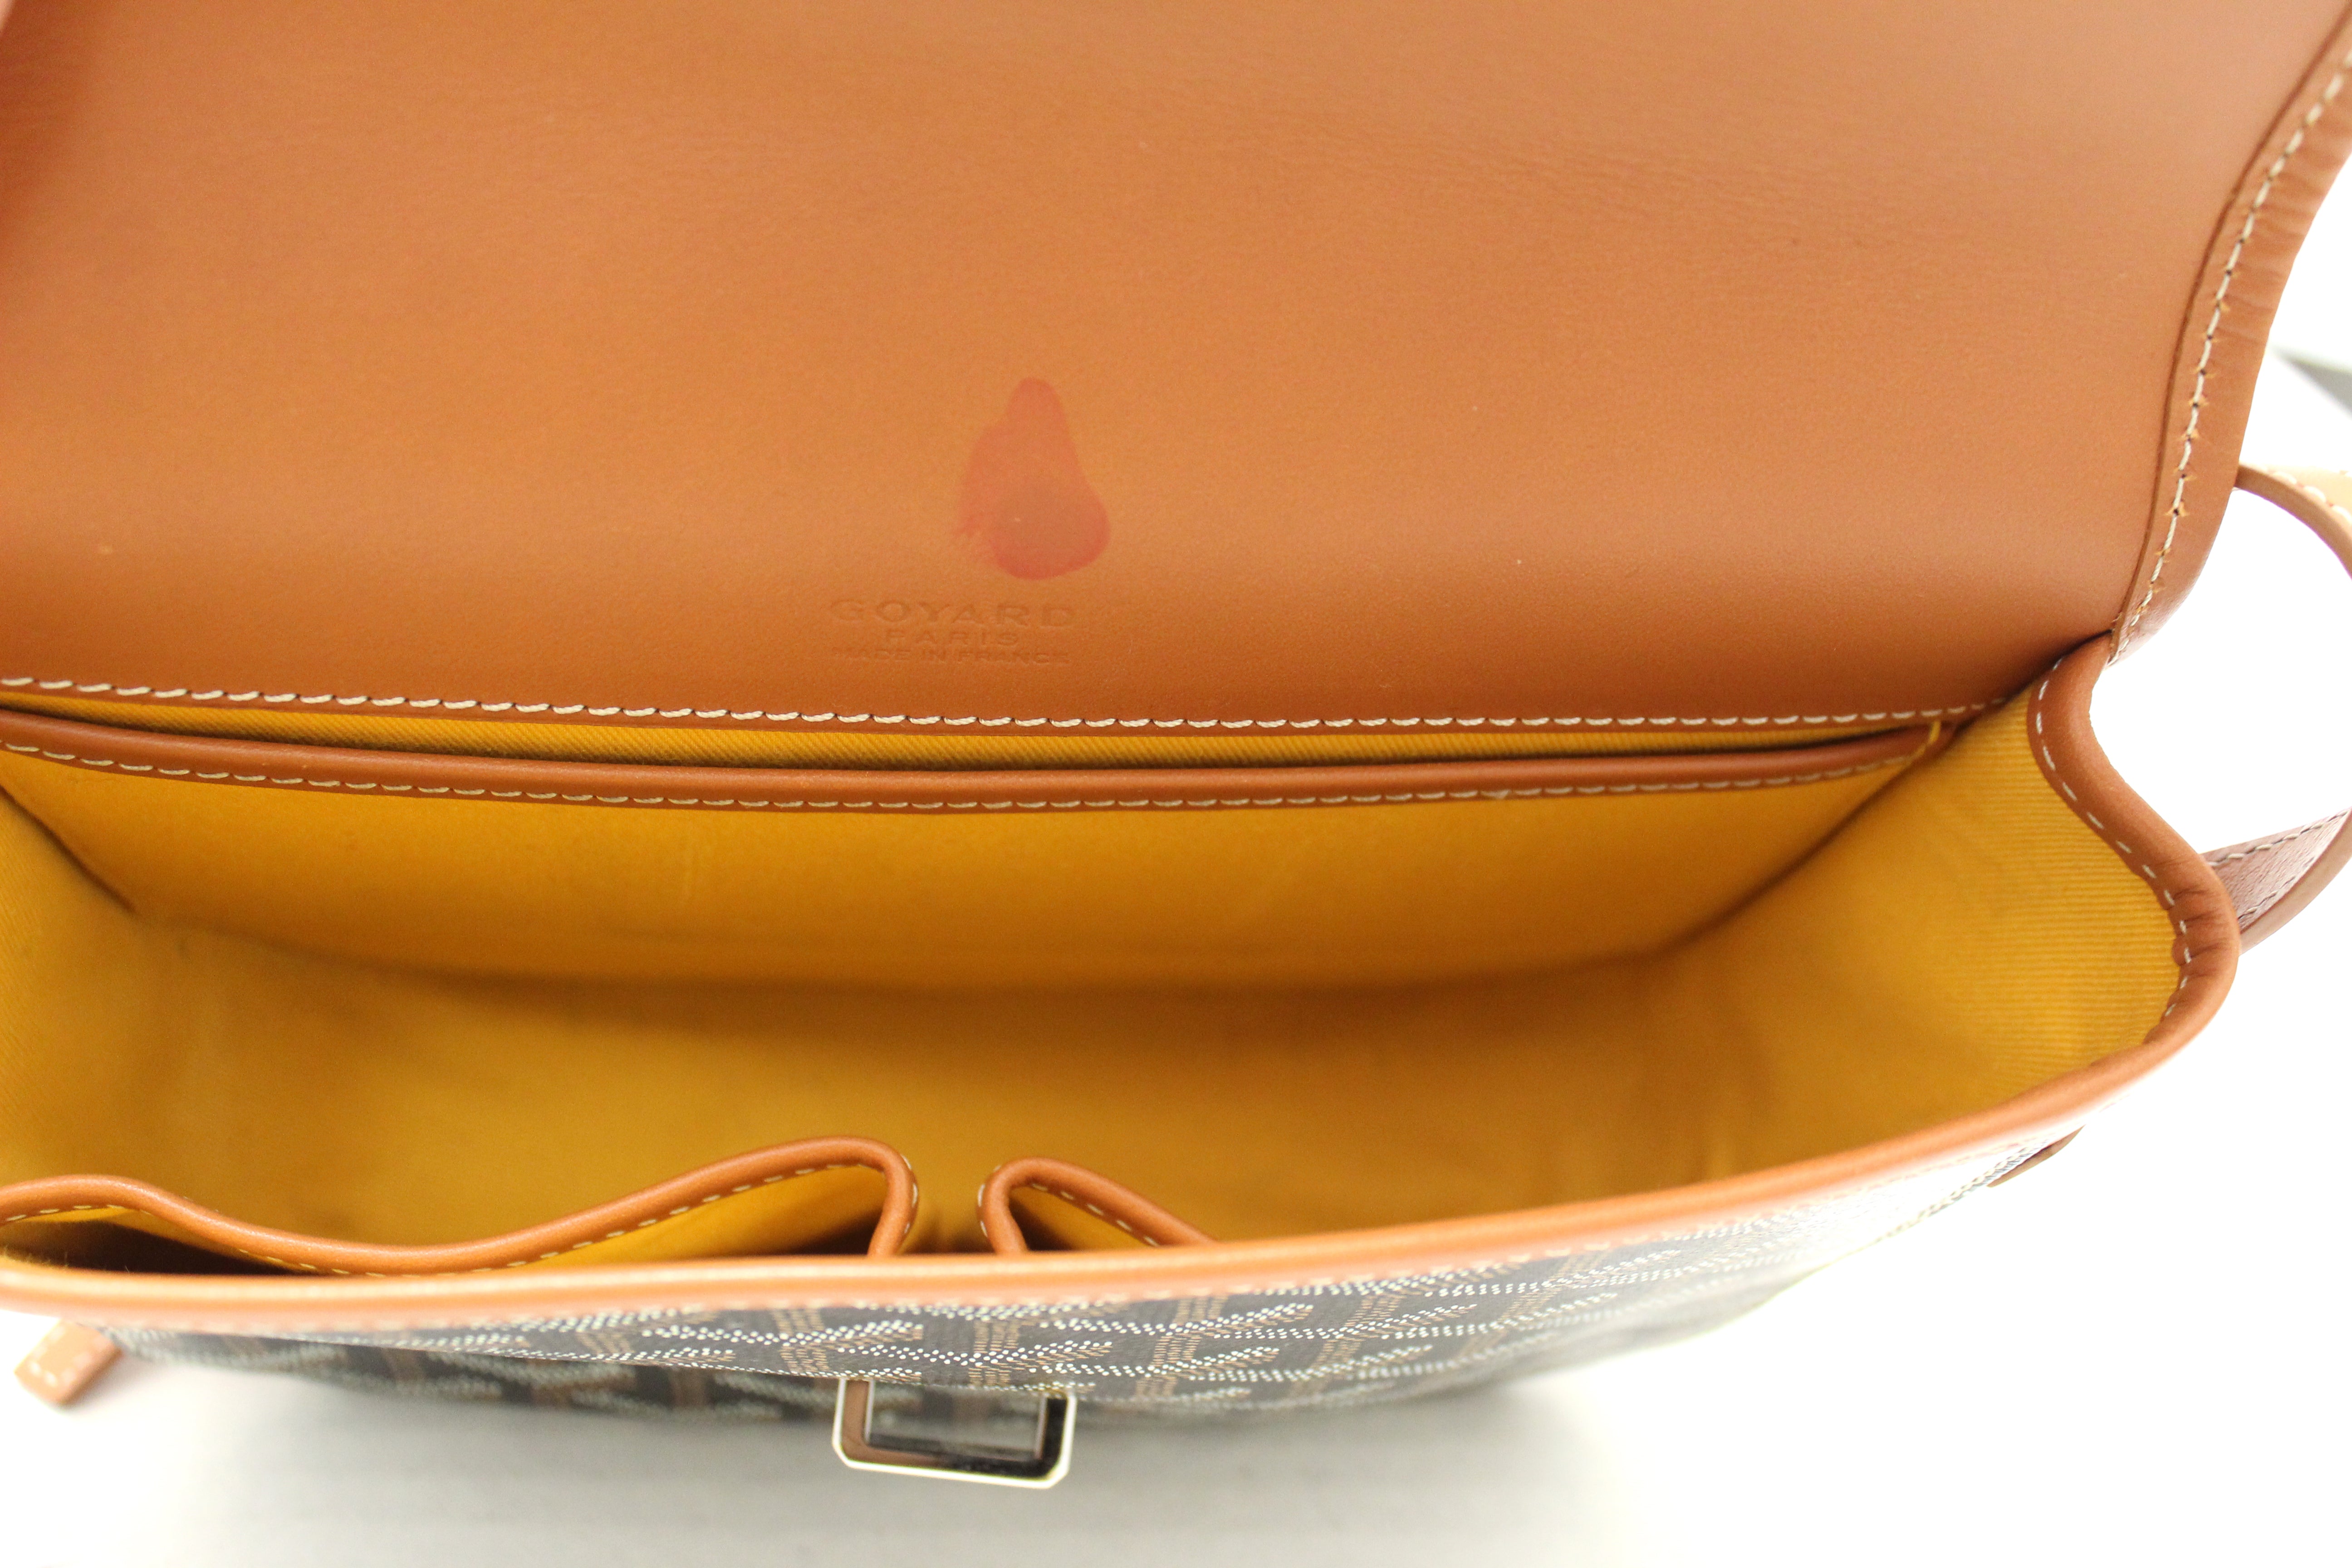 Goyard, Bags, Goyard Belvedere Messenger Bag Coated Canvas Pm Orange